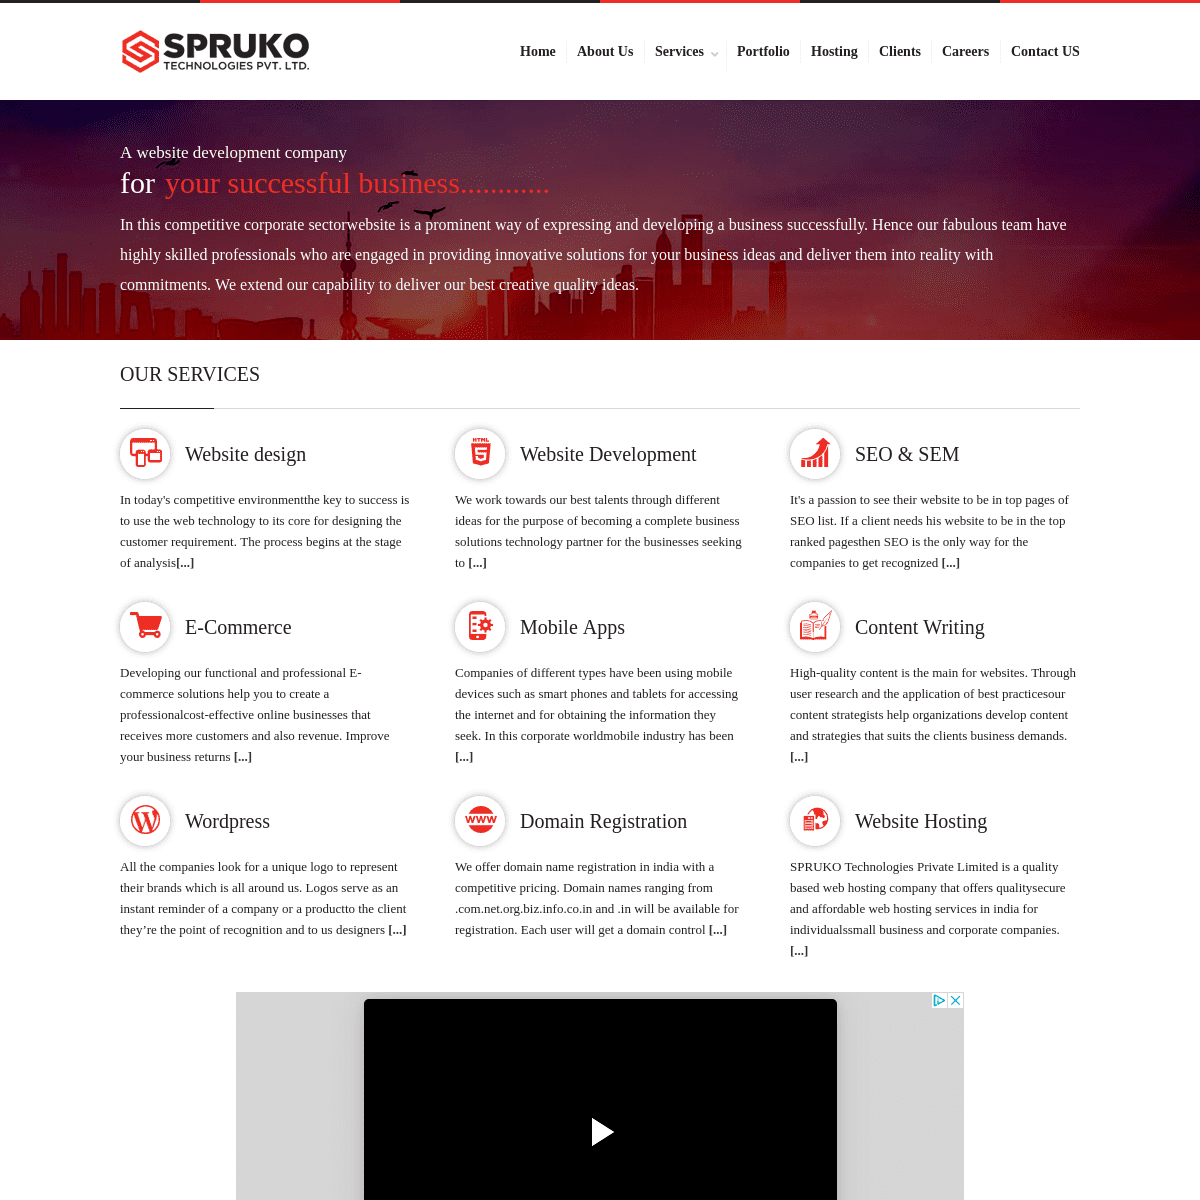 A complete backup of spruko.com